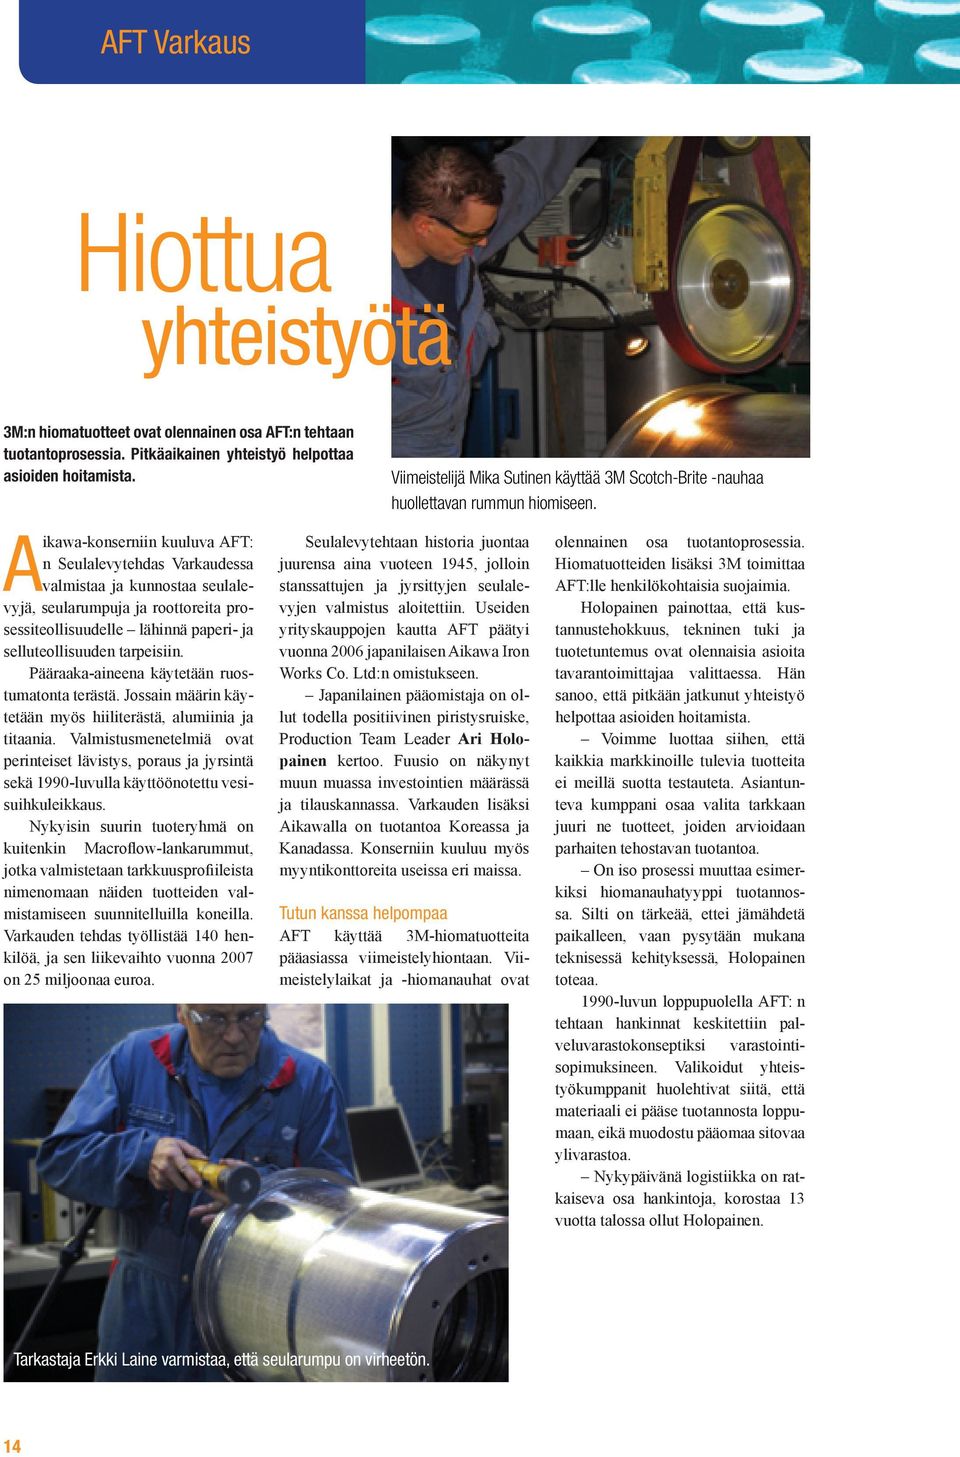 Aikawa-konserniin kuuluva AFT: n Seulalevytehdas Varkaudessa valmistaa ja kunnostaa seulalevyjä, seularumpuja ja roottoreita prosessiteollisuudelle lähinnä paperi- ja selluteollisuuden tarpeisiin.